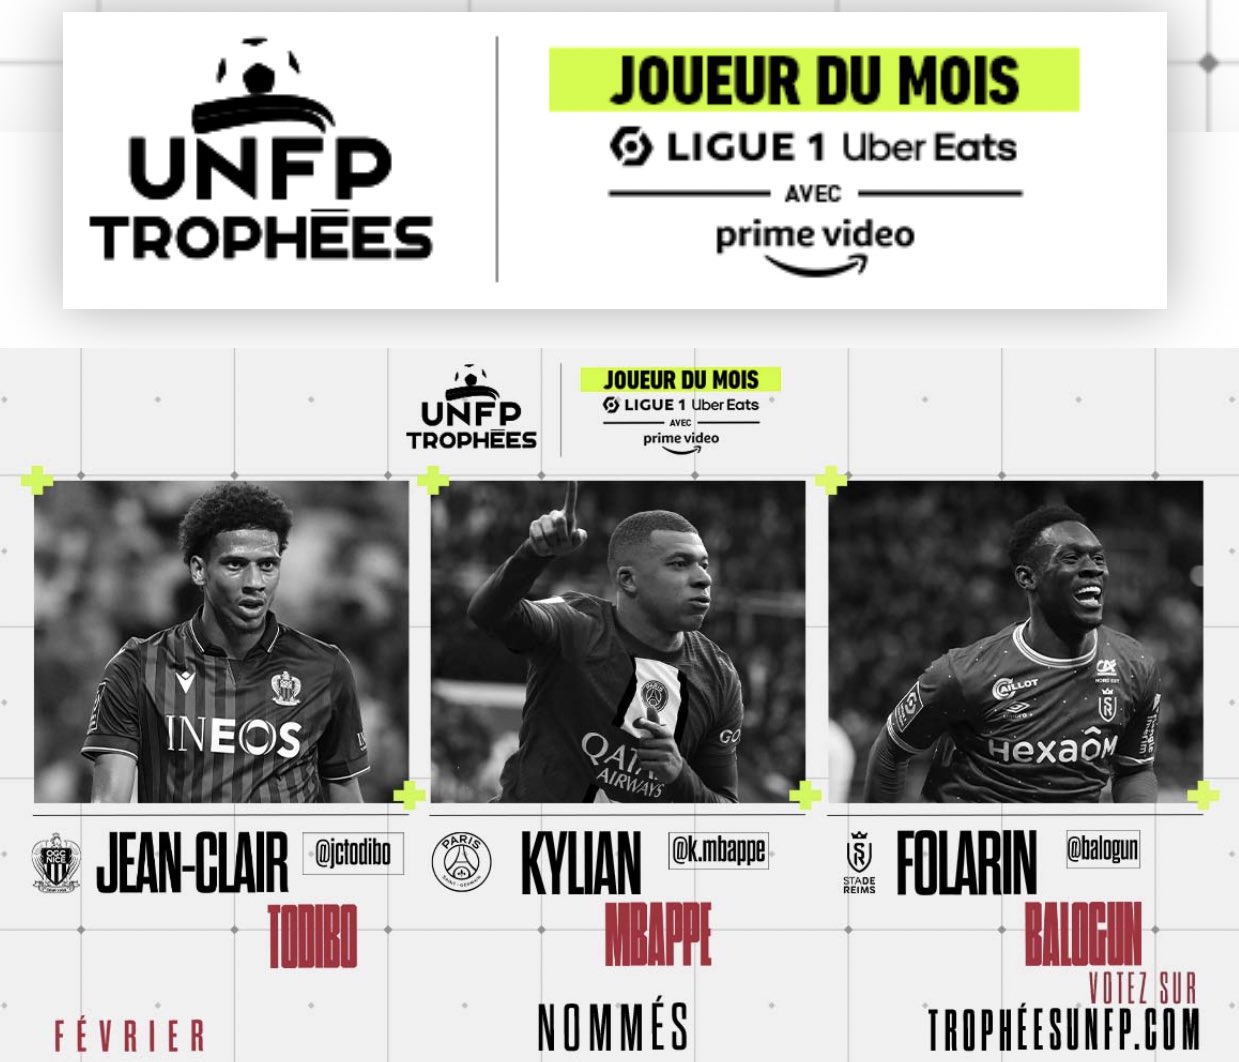 المرشحين لجائزة أفضل لاعب في الدوري الفرنسي بشهر فبراير